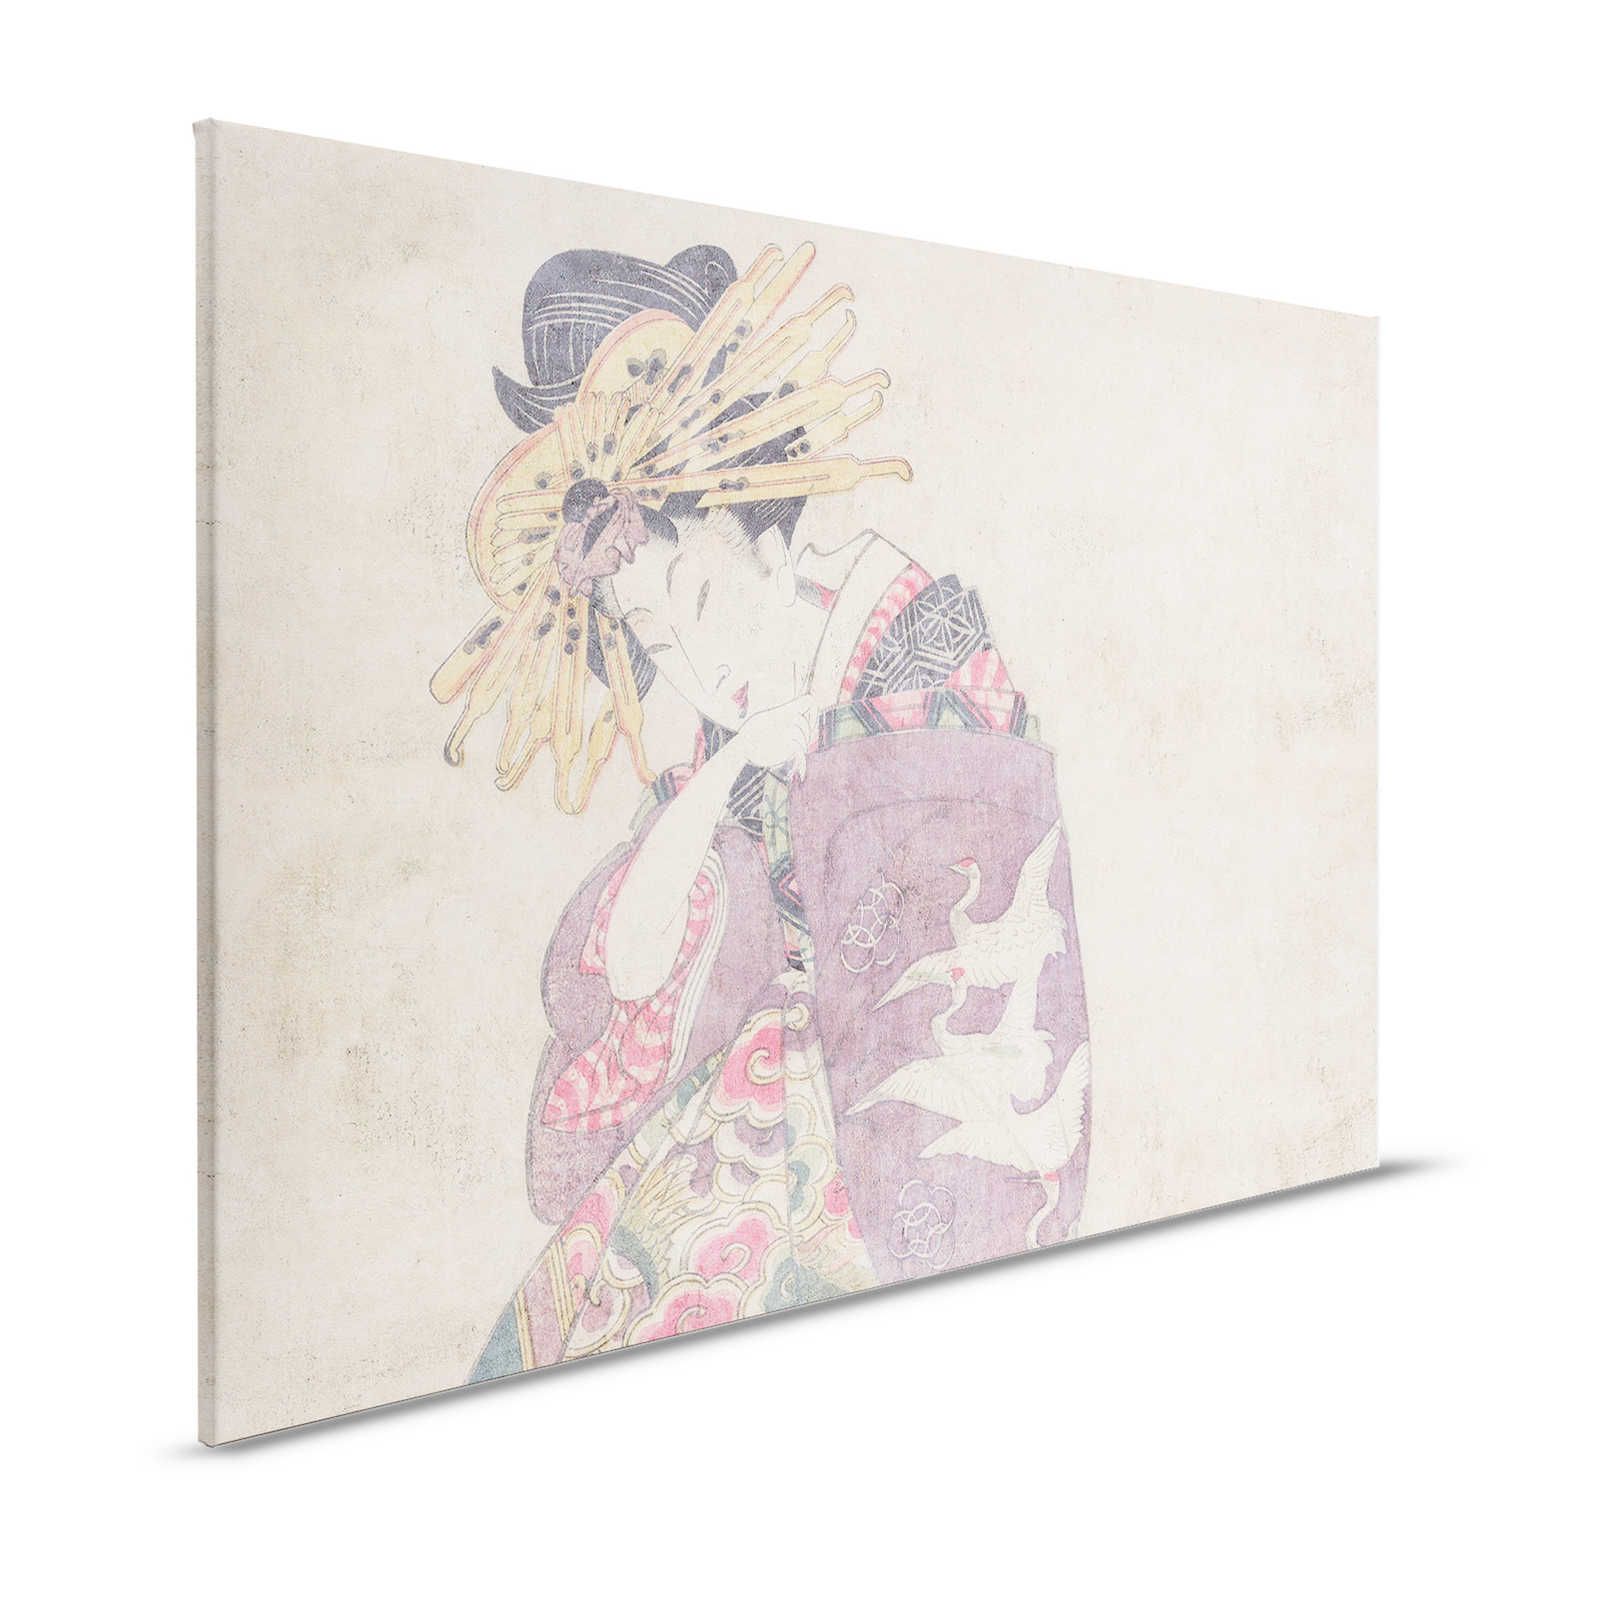 Osaka 1 - Quadro su tela con stampa d'arte Dekor asiatica in stile vintage - 1,20 m x 0,80 m
